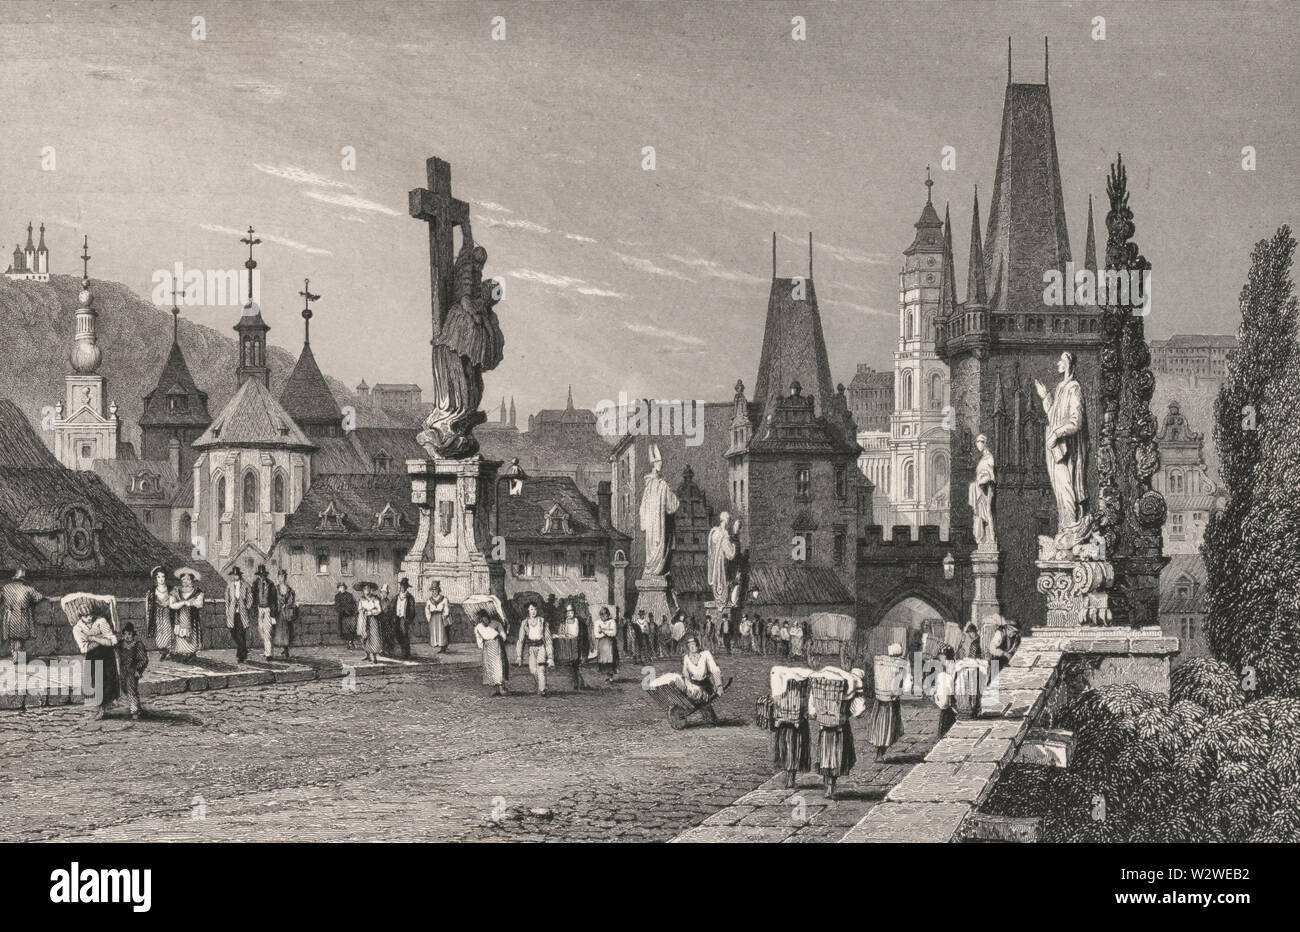 Praga - Imprimir muestra una vista del Puente de Carlos en Praga, República Checa, con torres en el extremo de la derecha, la estatua de Lutgardis sobre la izquierda, y los peatones en el puente, con paisaje urbano de Praga en el fondo. 1831 Foto de stock